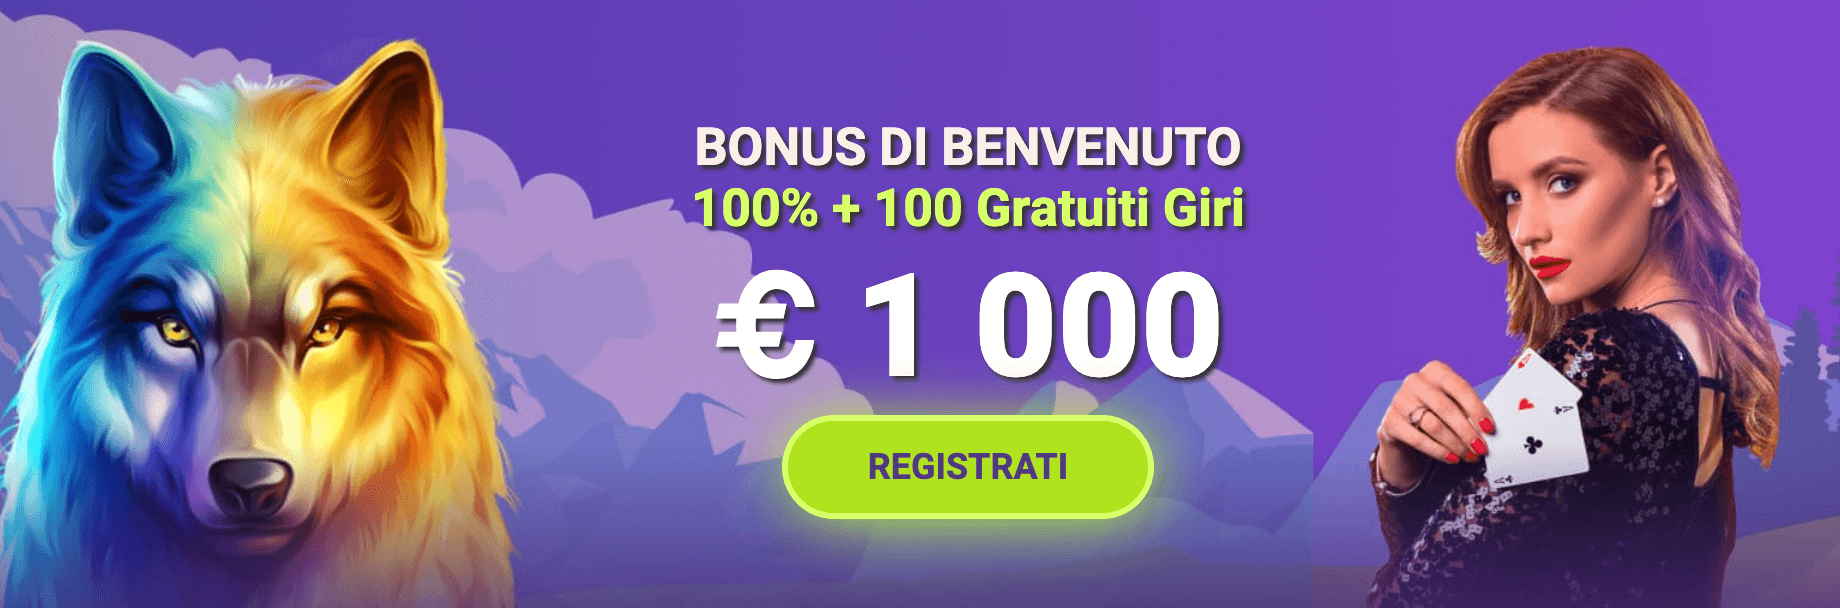 Fgfox Casino Bonus Benvenuto